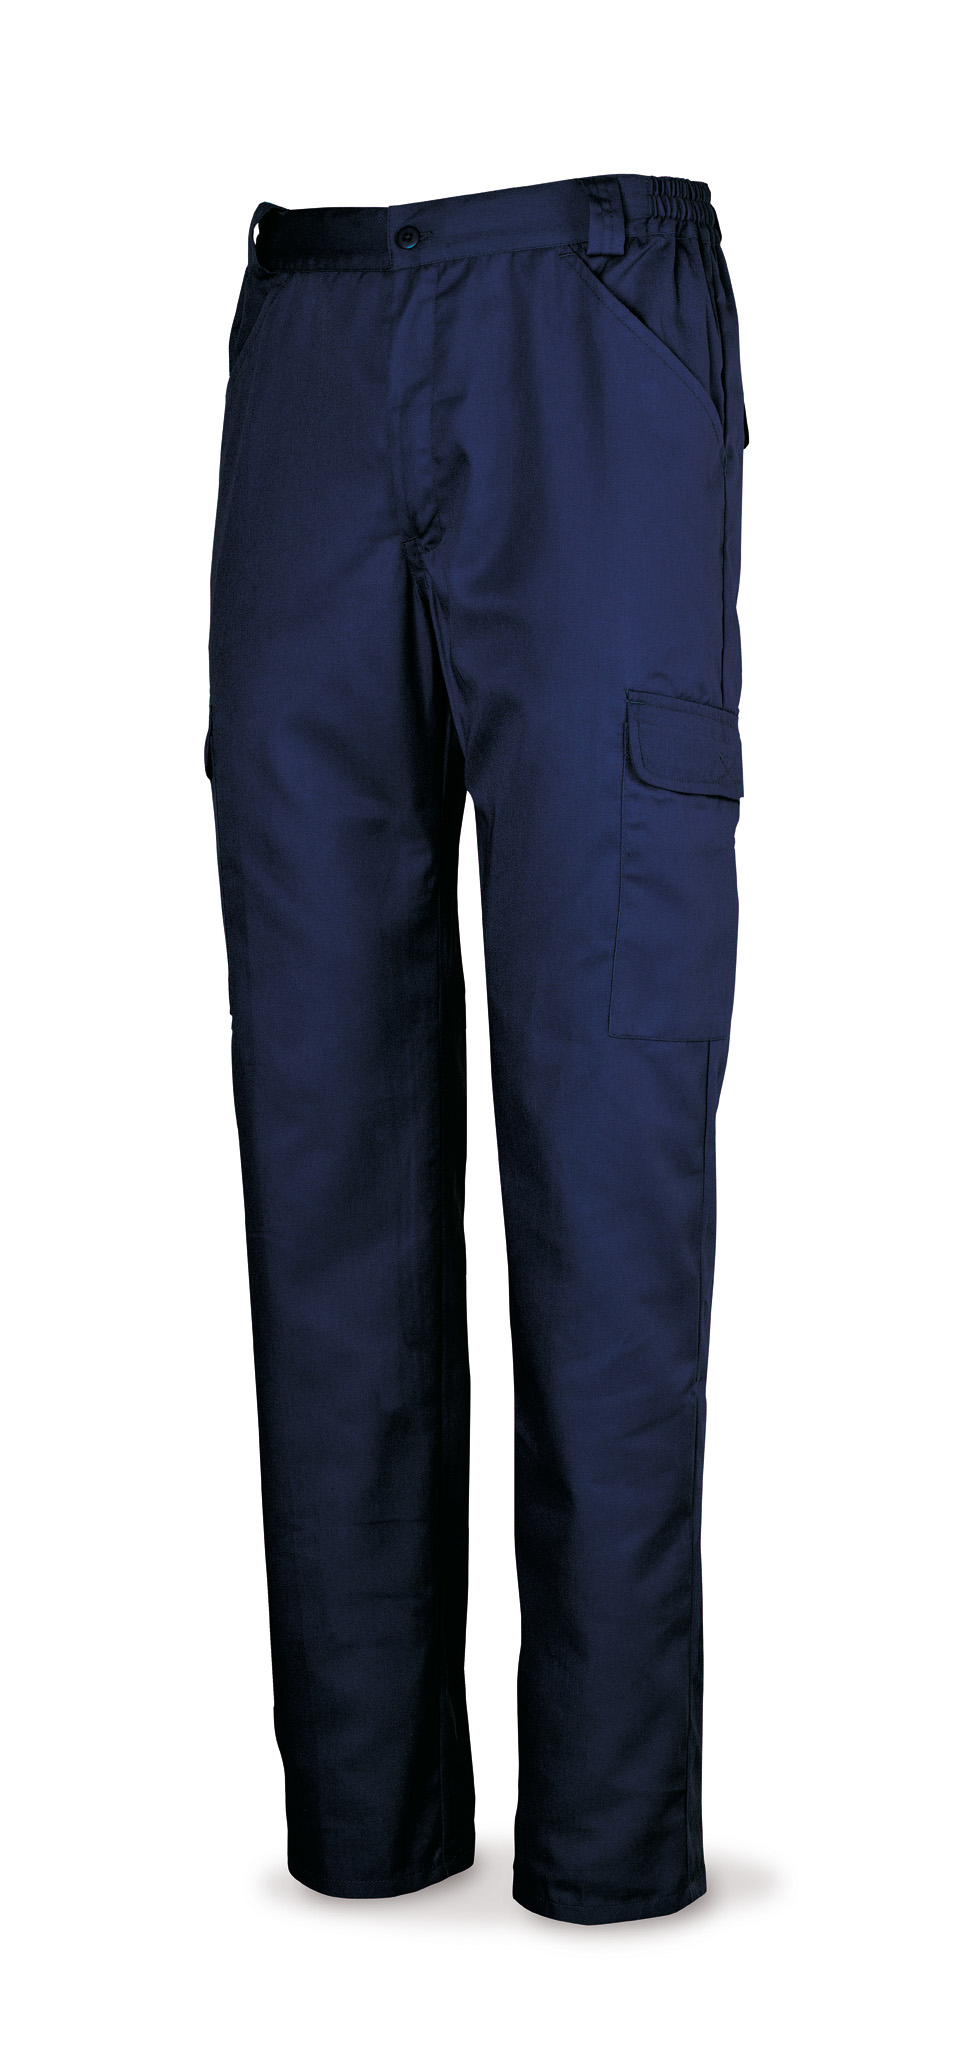 388-PEAM Vetements de travail laboral Série Basics Pantalon en coton bleu marine 200 g. Multi-poches.